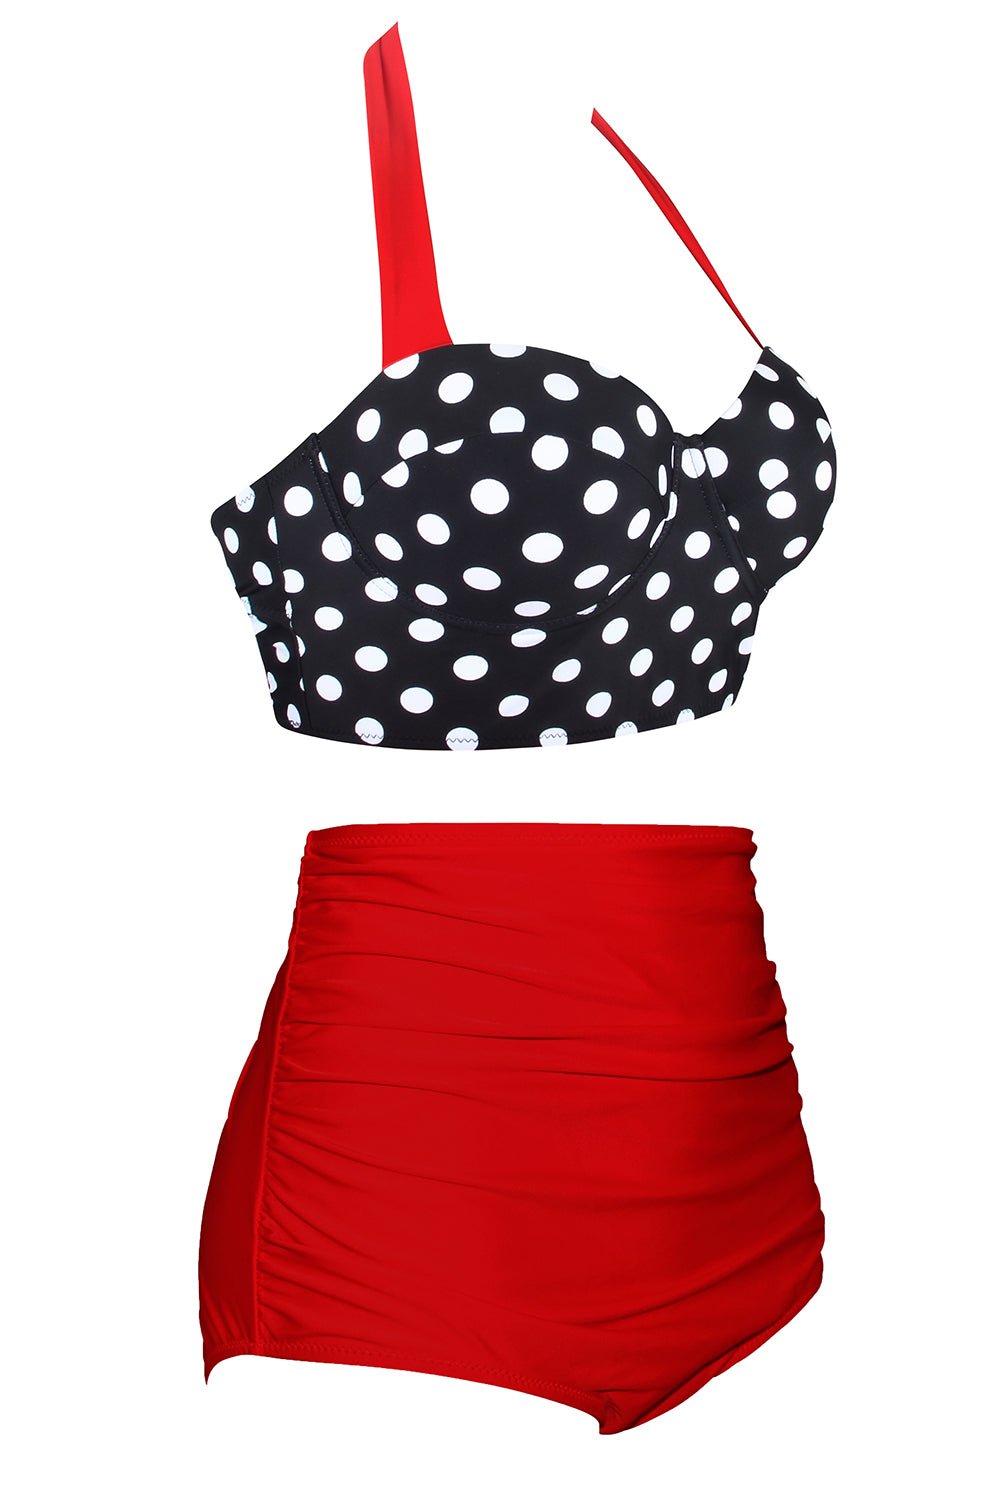 Roter Vintage Neckholder-Push-Up-Bikini mit Polka Dots und hoher Taille für Bauchkontrolle in Übergröße